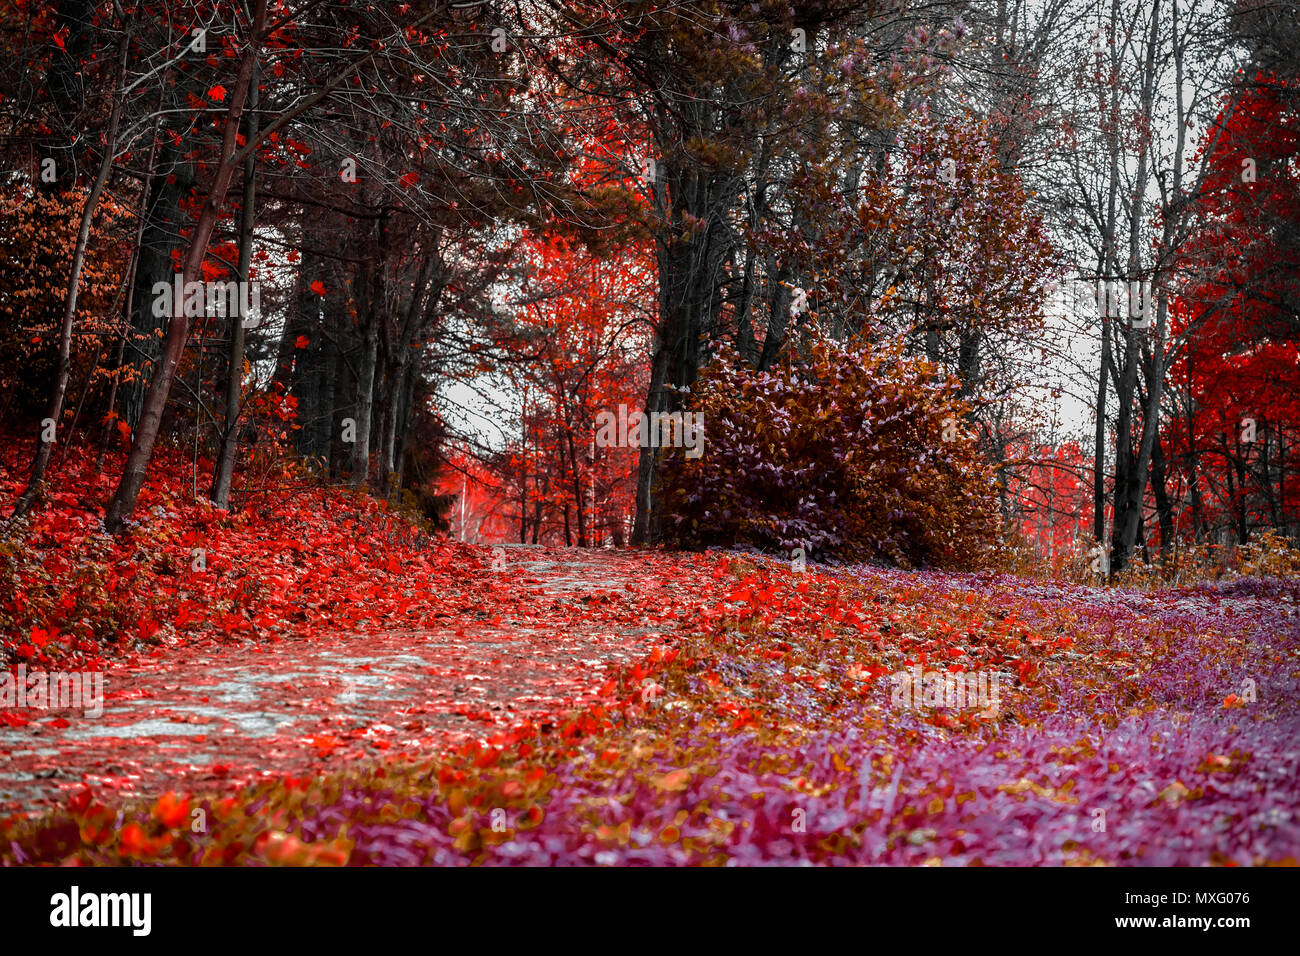 Helle Farben des Herbstes. Waldweg mit vielen Blättern, scarlet Herbst Landschaft im alten Park gefallen. Wandern, Stimmung, Nostalgie Konzept Stockfoto